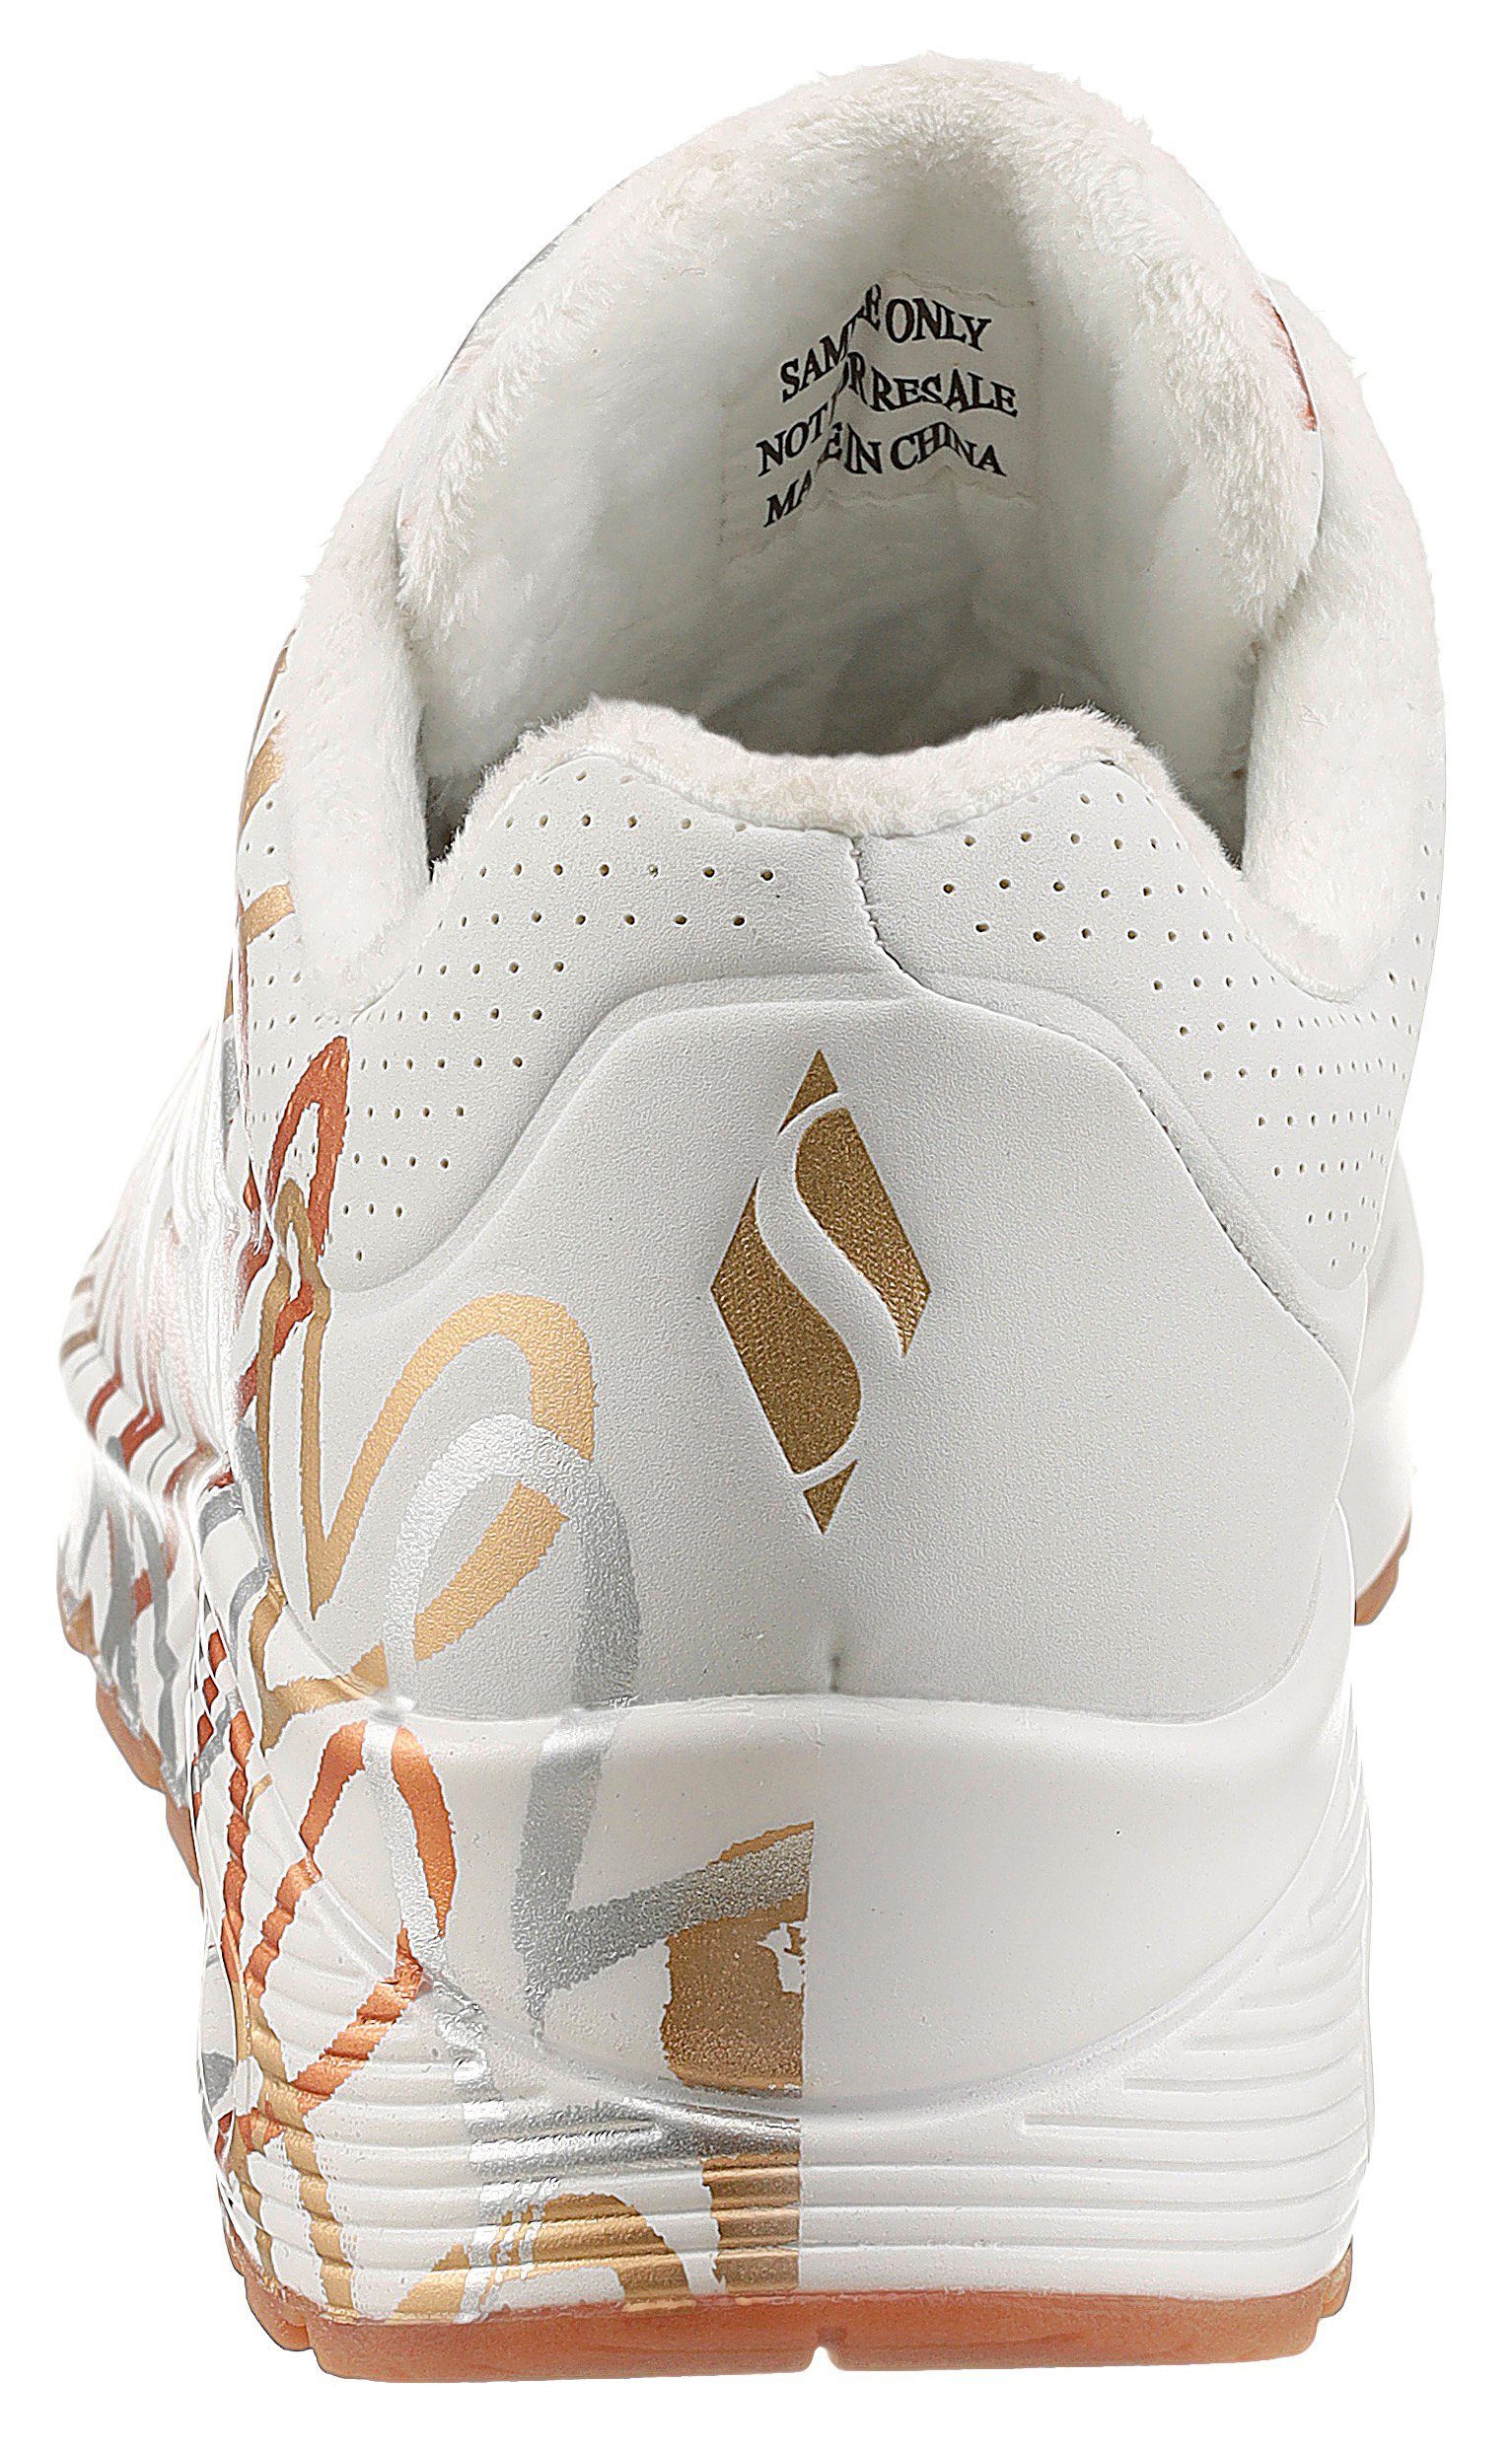 METALLIC UNO trendigen Sneaker mit Metallic-Print Skechers weiß-goldfarben - LOVE